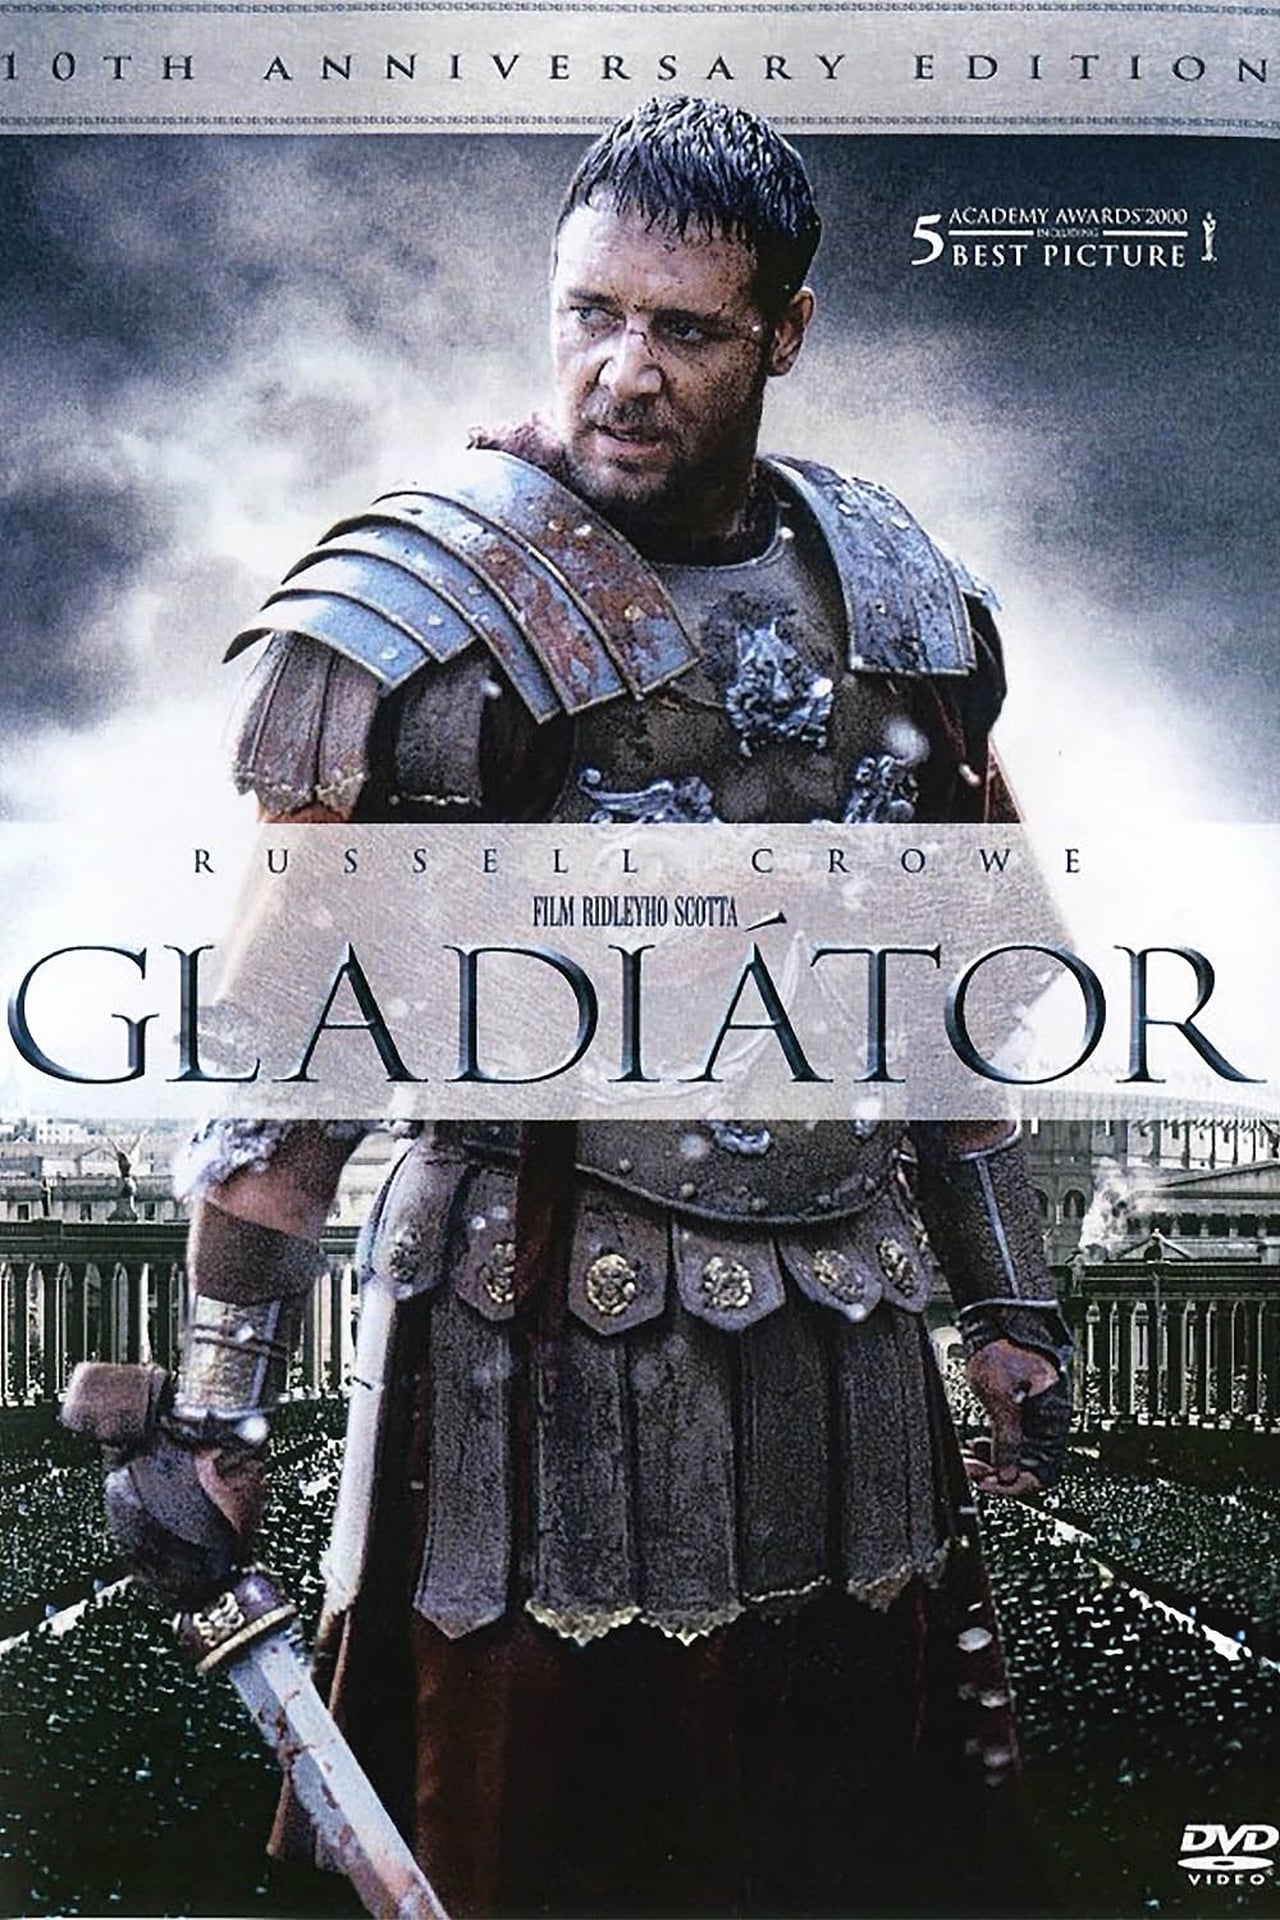 Gladiator (2000) Theatrical Cut 640Kbps 23.976Fps 48Khz 5.1Ch DD+ AMZN E-AC3 Turkish Audio TAC